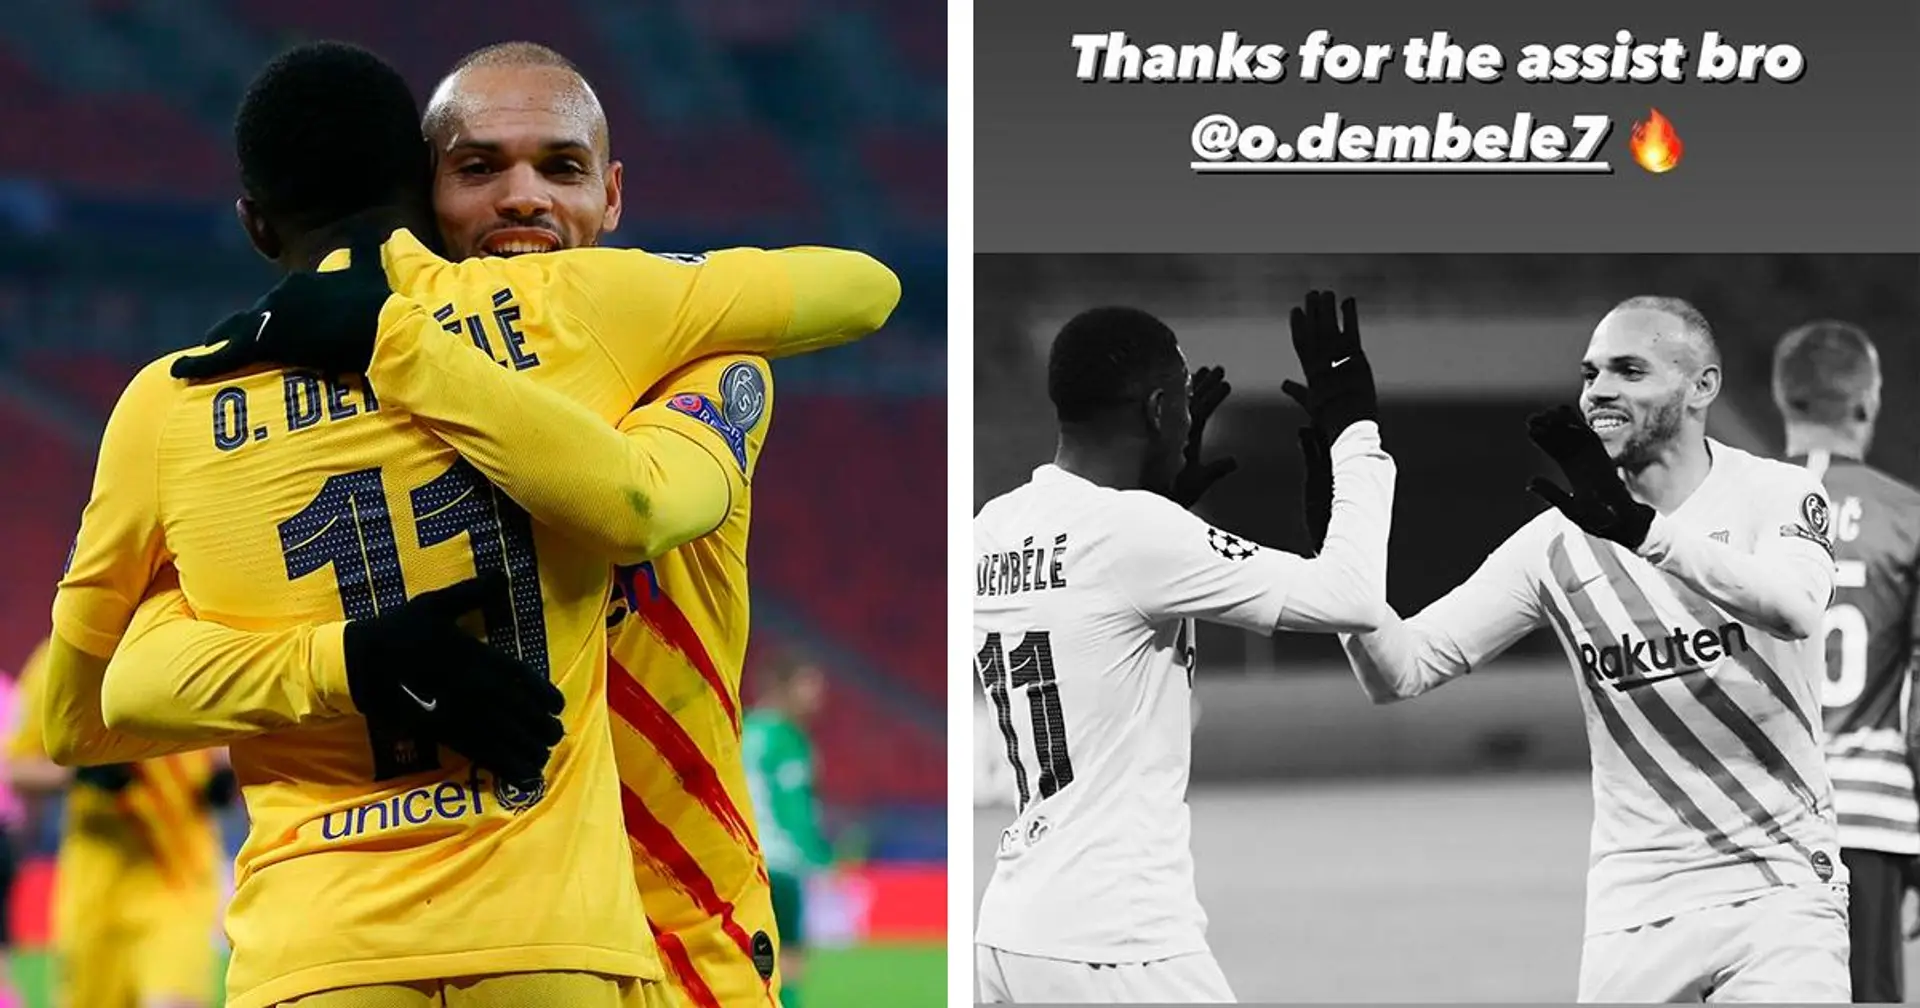 "Merci pour la passe décisive mon frère": Braithwaite se rend sur Instagram pour remercier Dembele